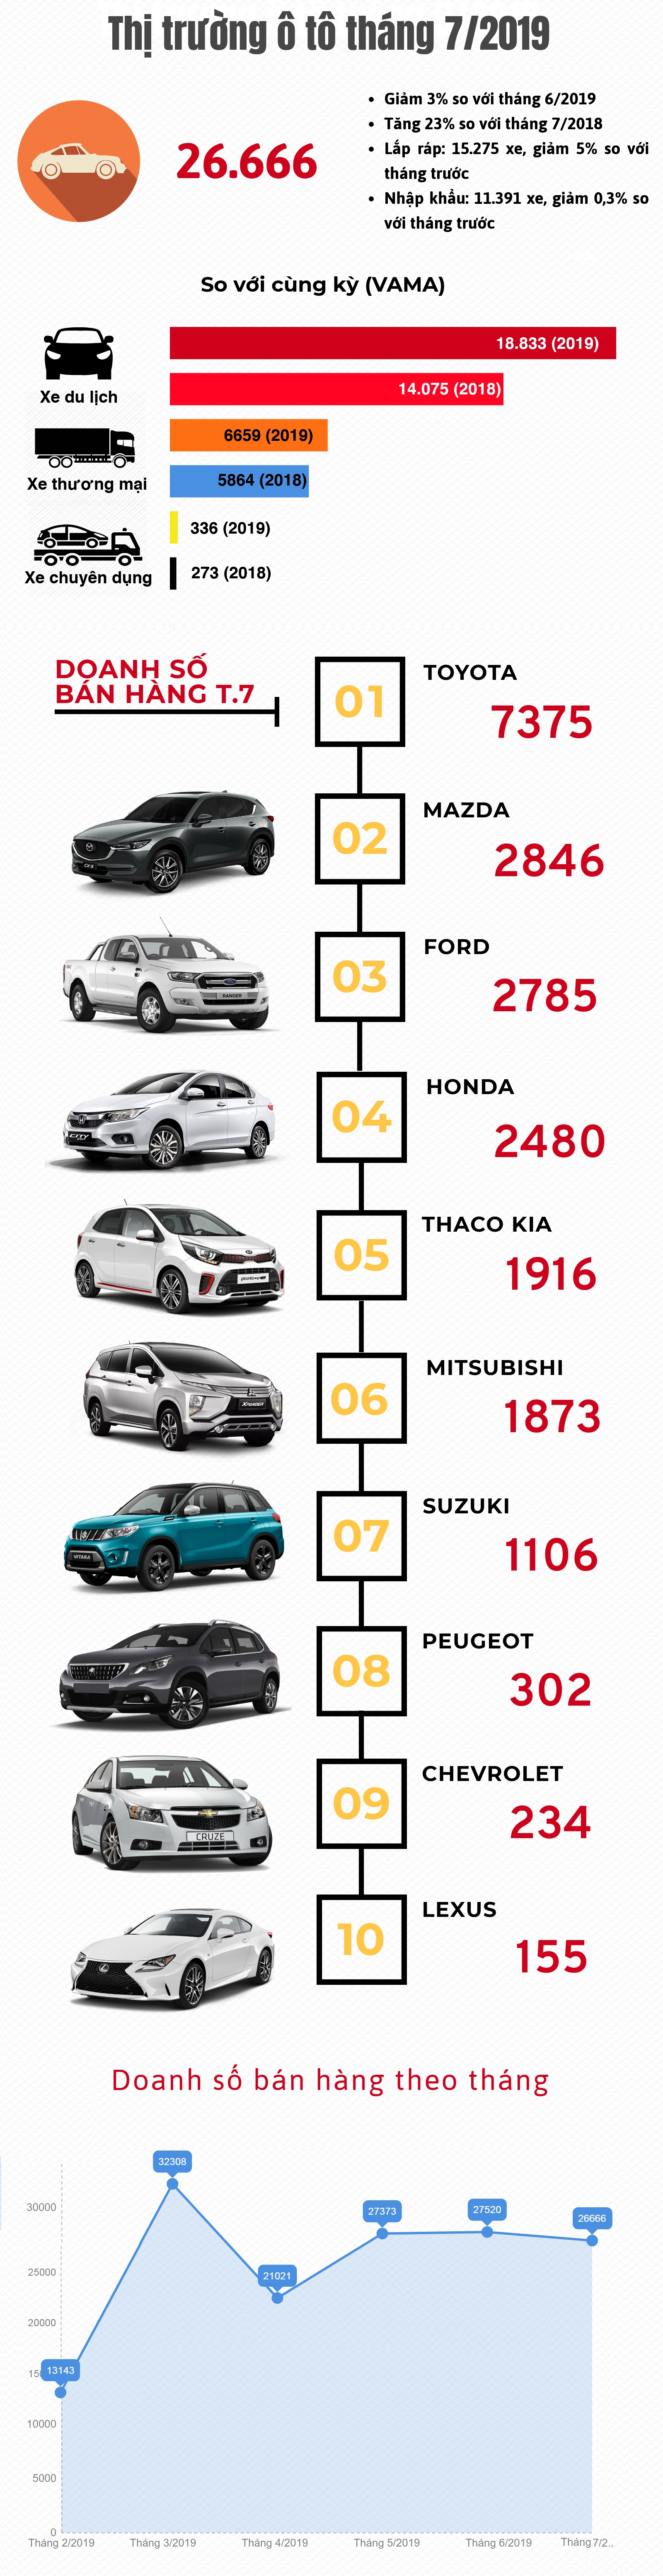 [Infographic] Thị trường ô tô tháng 7/2019: Quay đầu giảm nhẹ